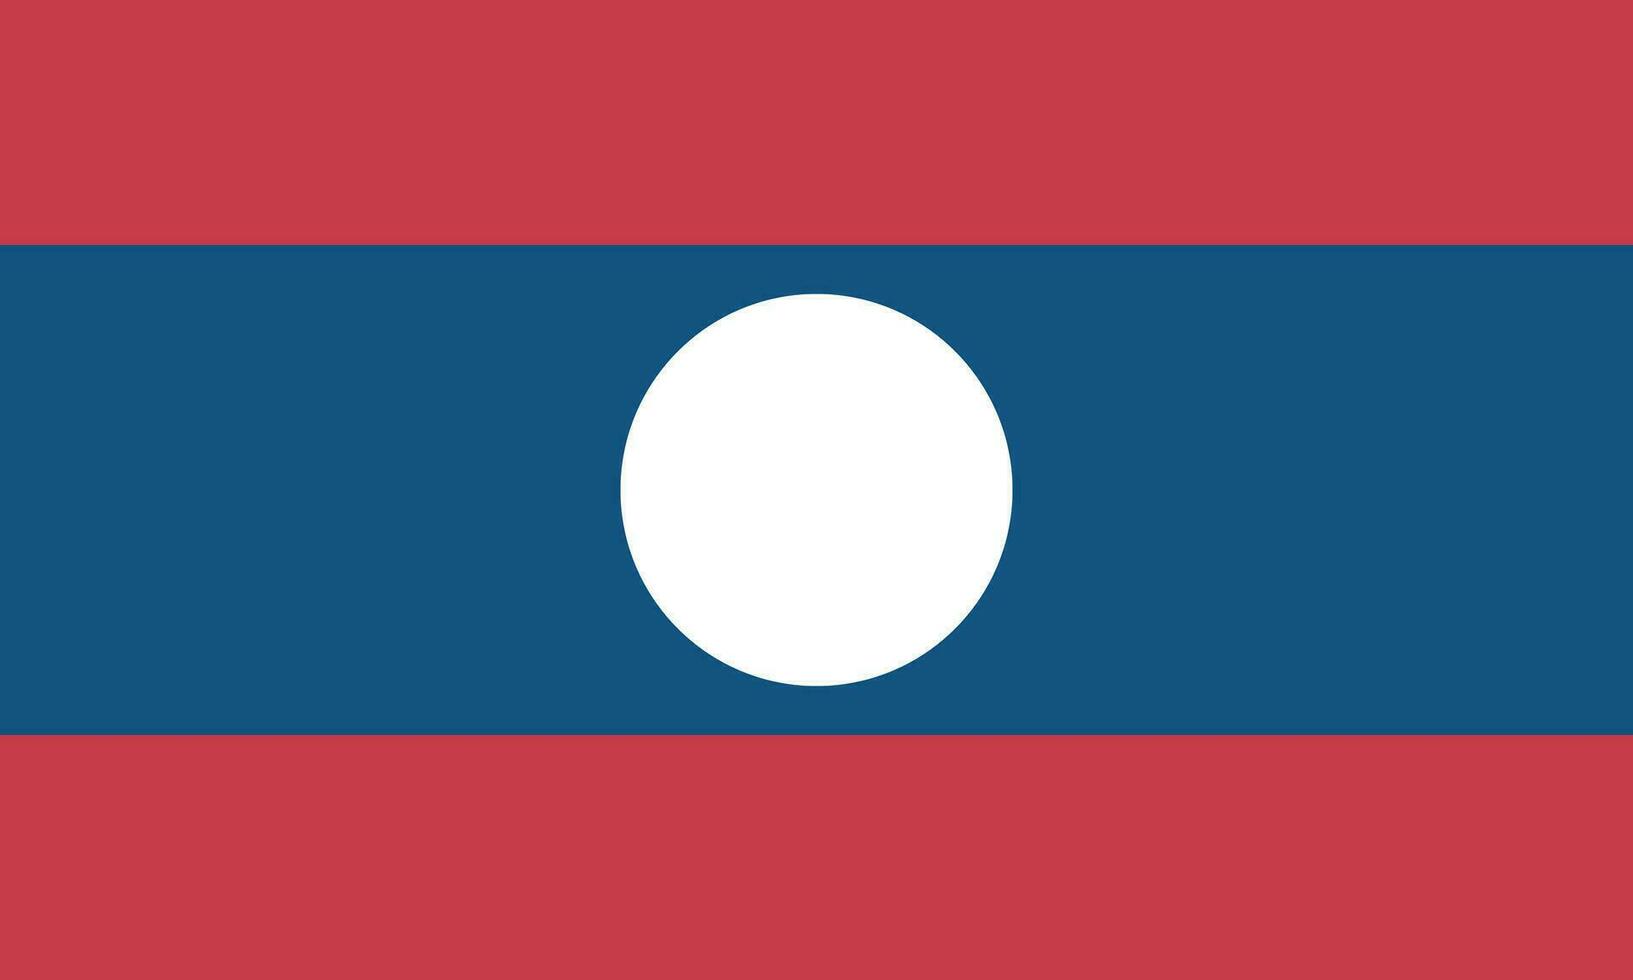 nacional Laos bandera, oficial colores, y dimensiones. vector ilustración. eps 10 vector.